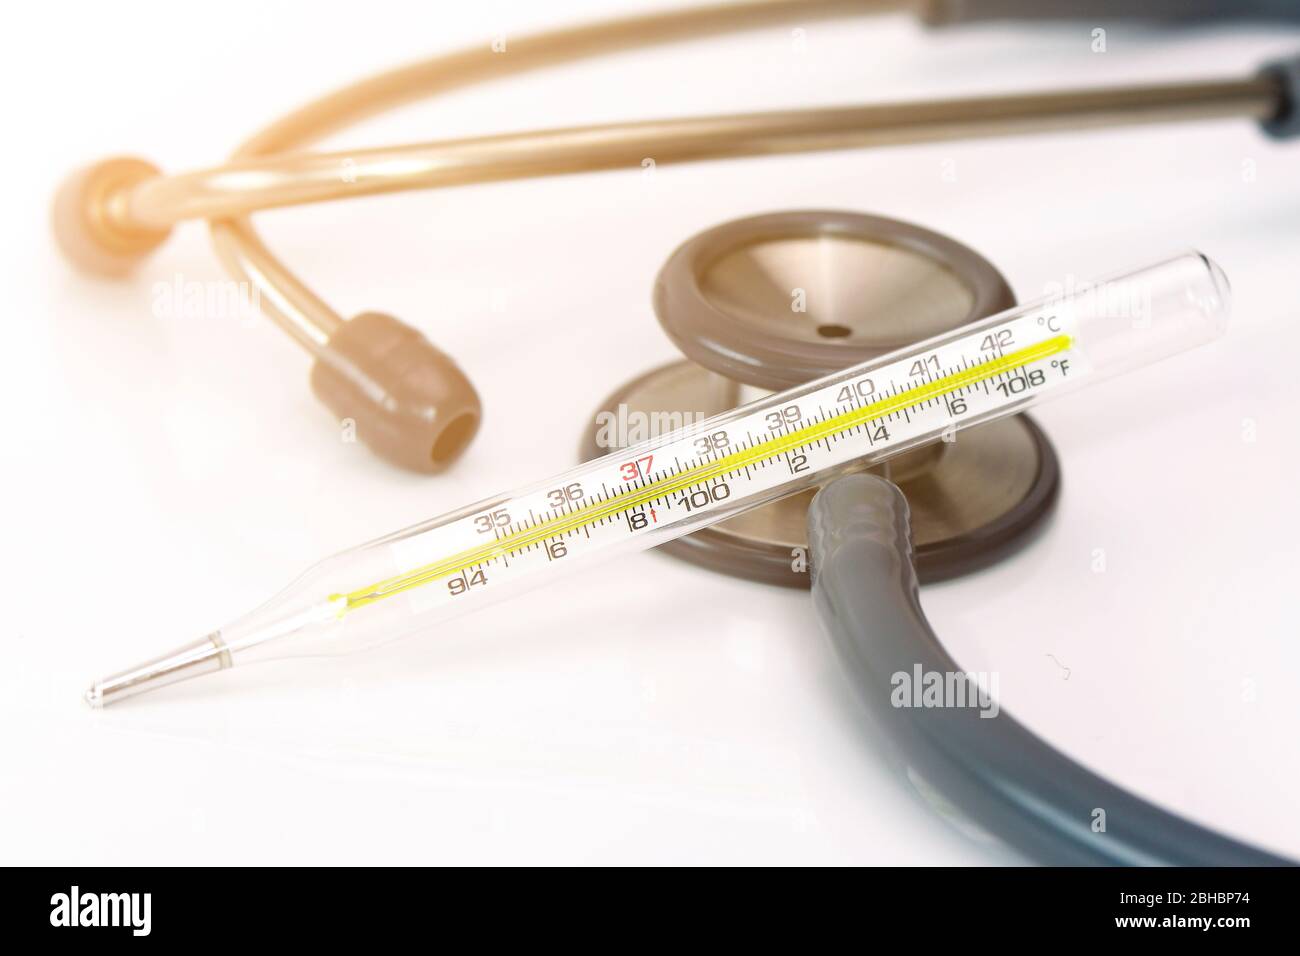 Oral-Thermometer und Stethoskop auf weißem Hintergrund mit warmem Lichtton im Konzept der Früherkennung COVID-19 Infektion mit Körpertemperatur-Messung Stockfoto